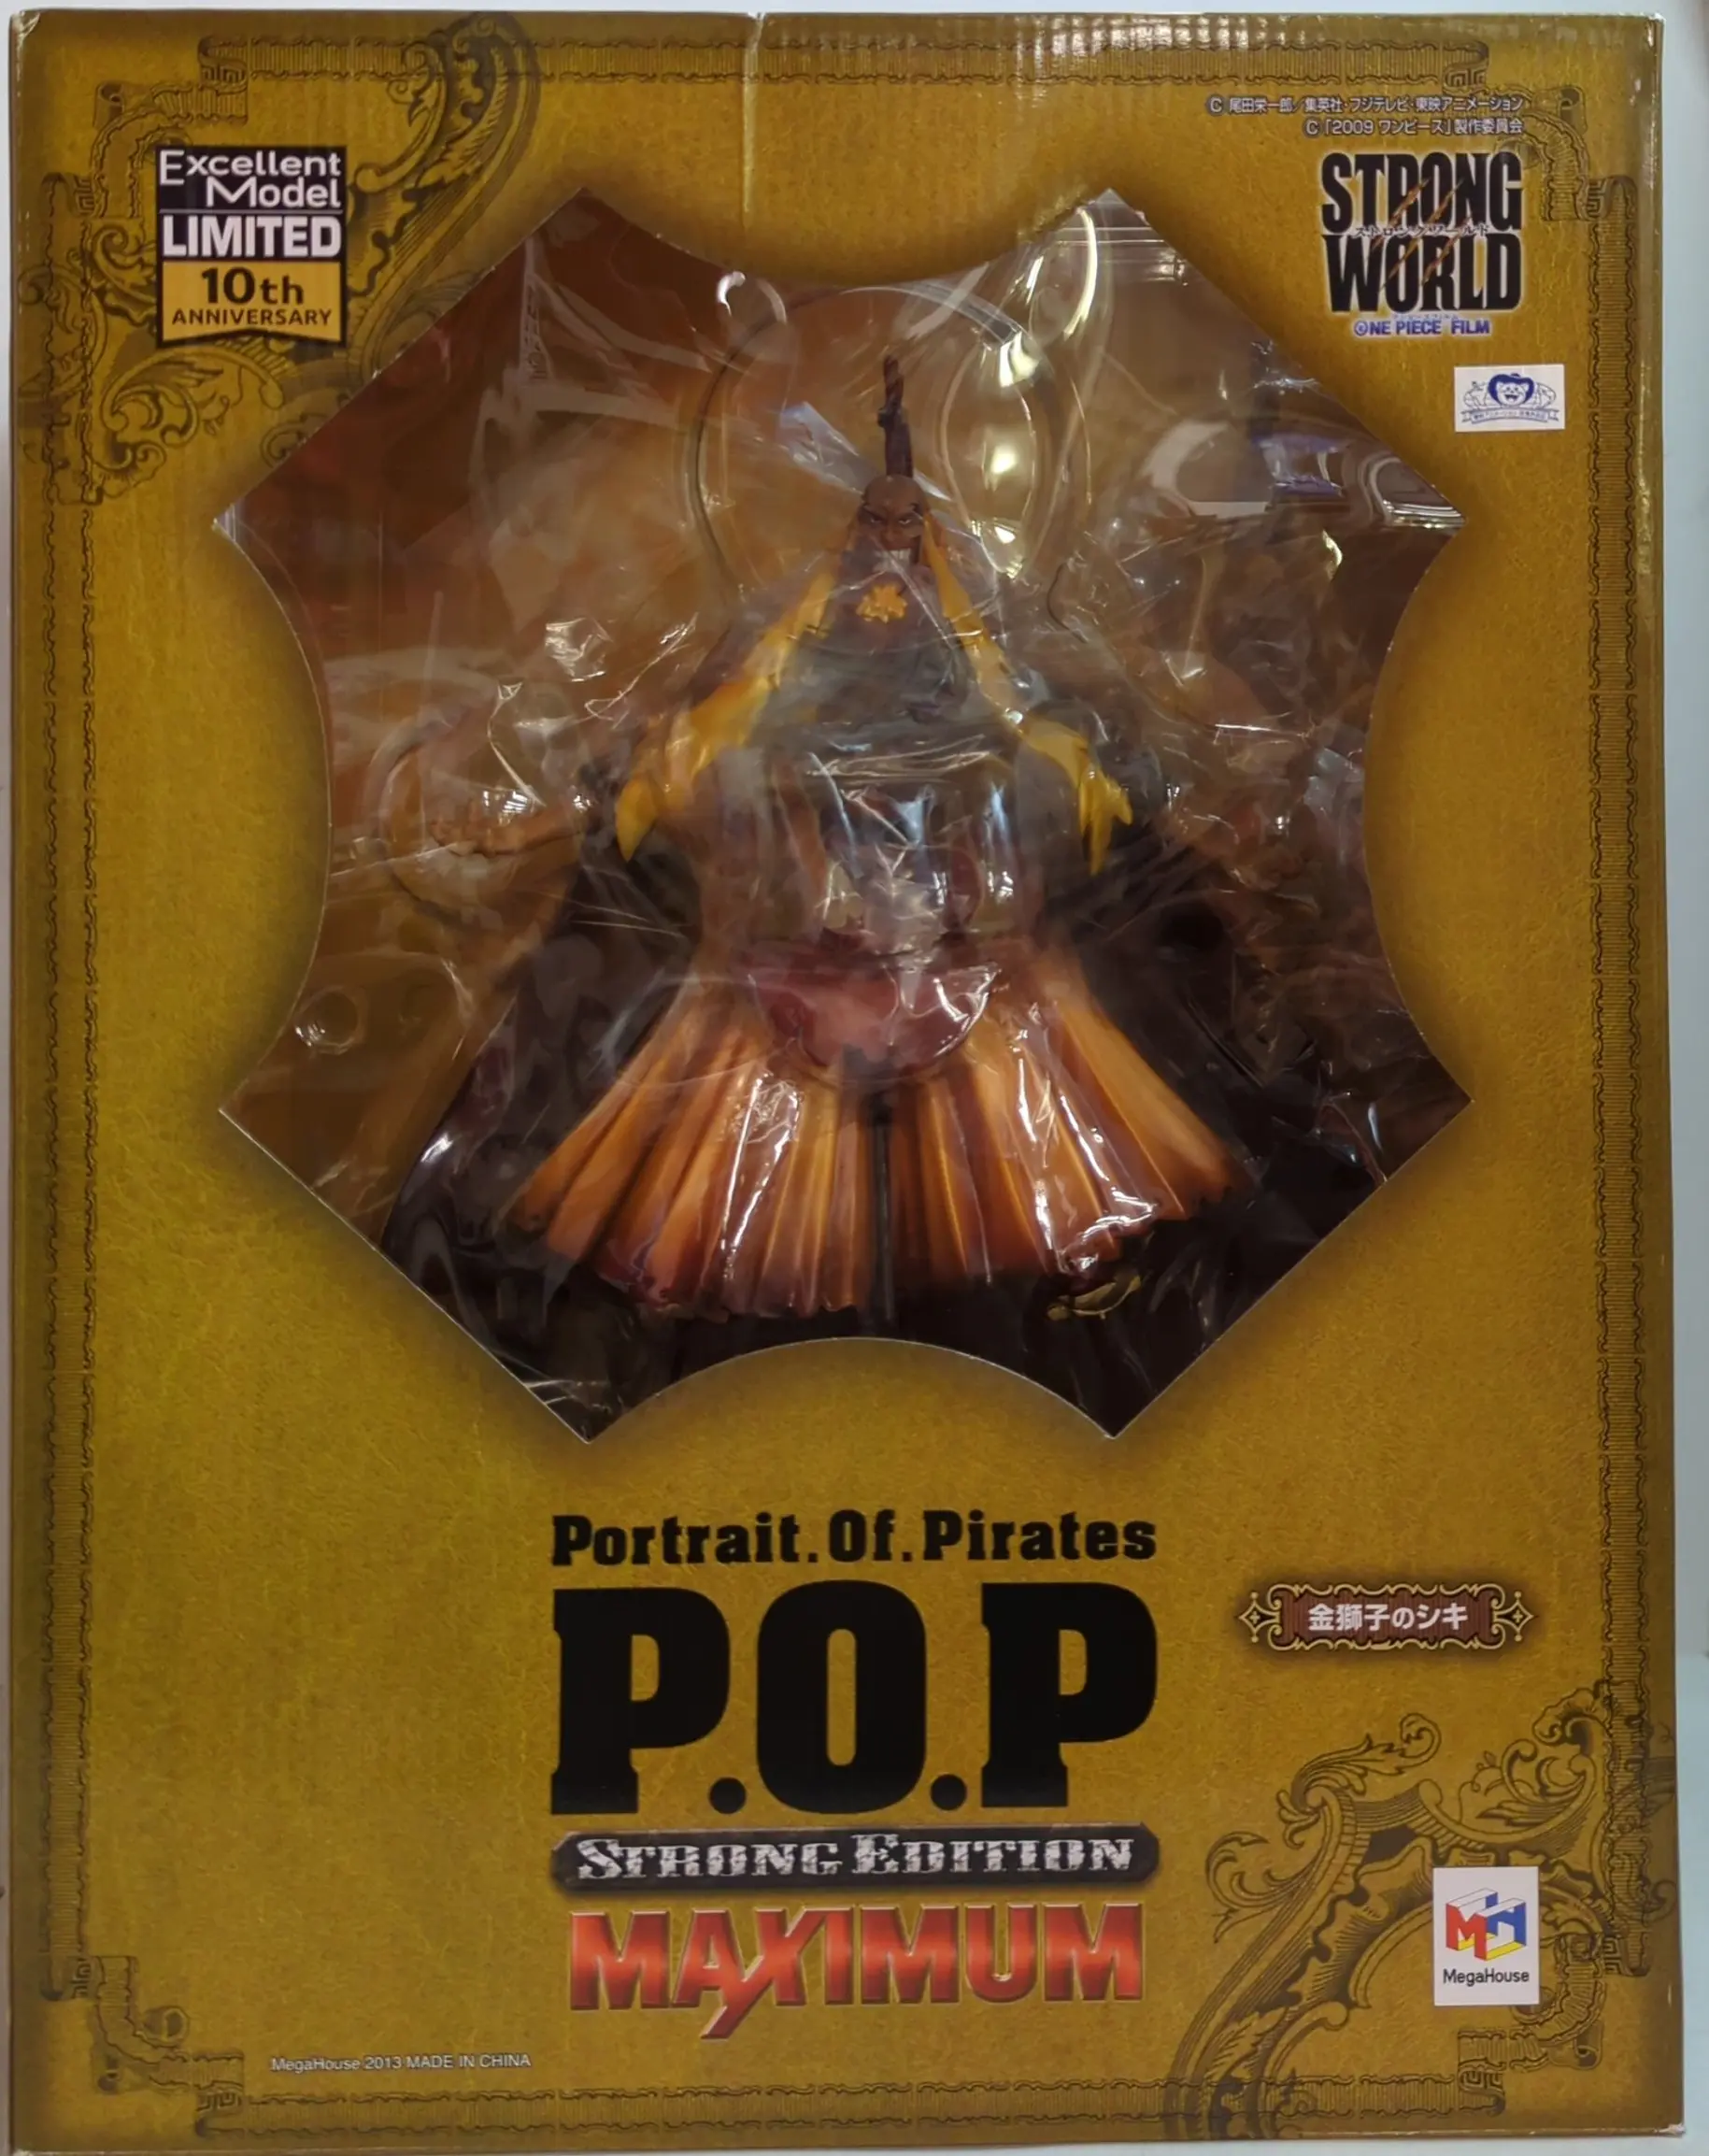 P.O.P (Portrait.Of.Pirates) - One Piece / Shiki